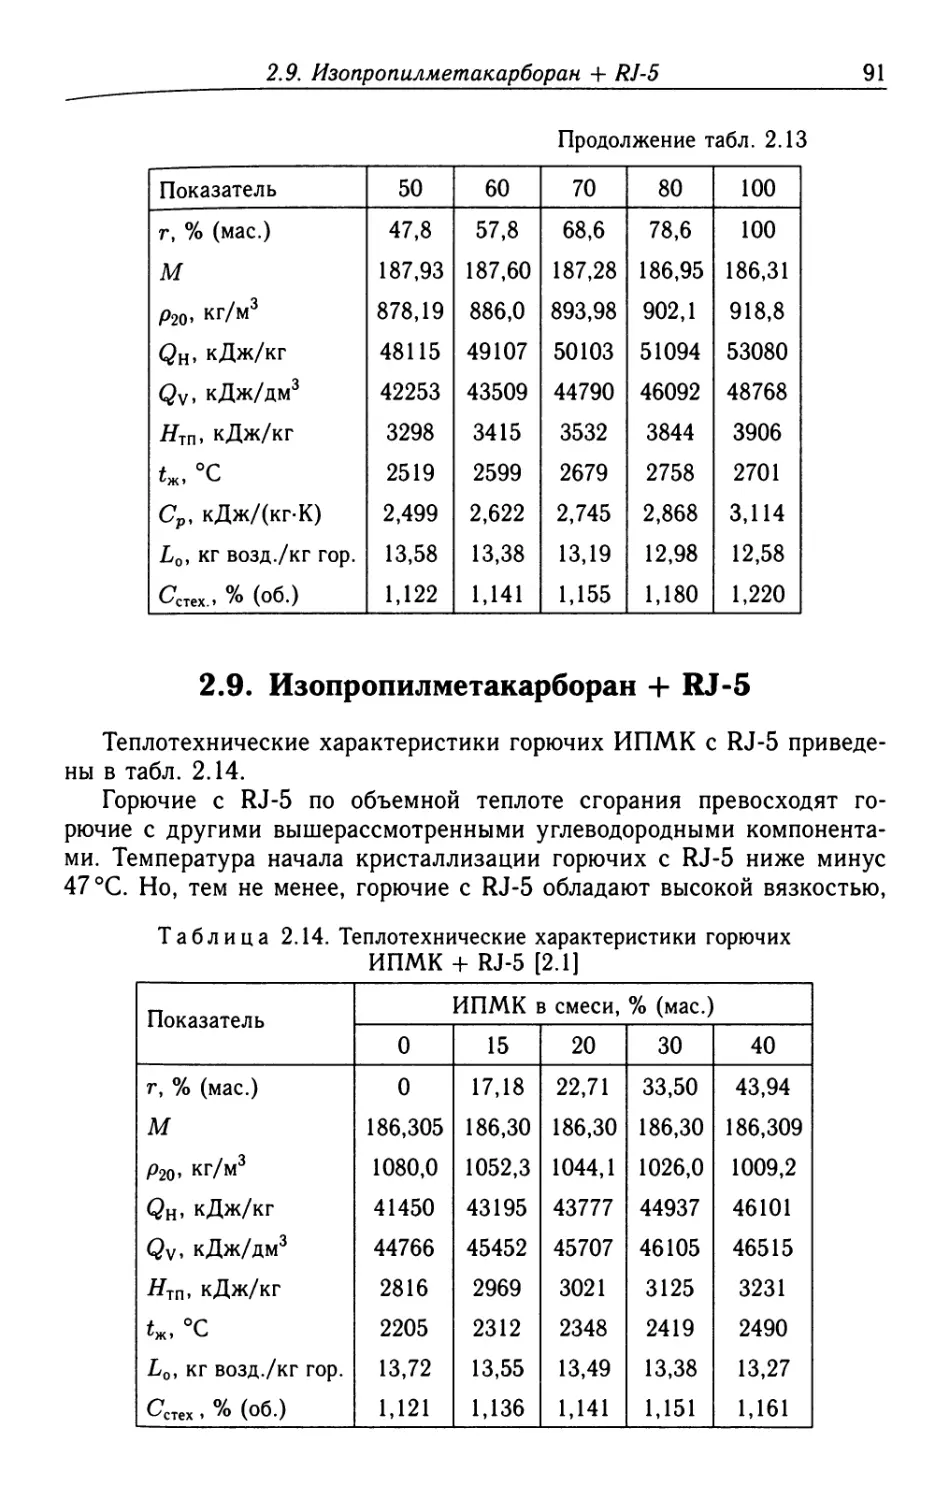 2.9. Изопропилметакарборан + RJ-5